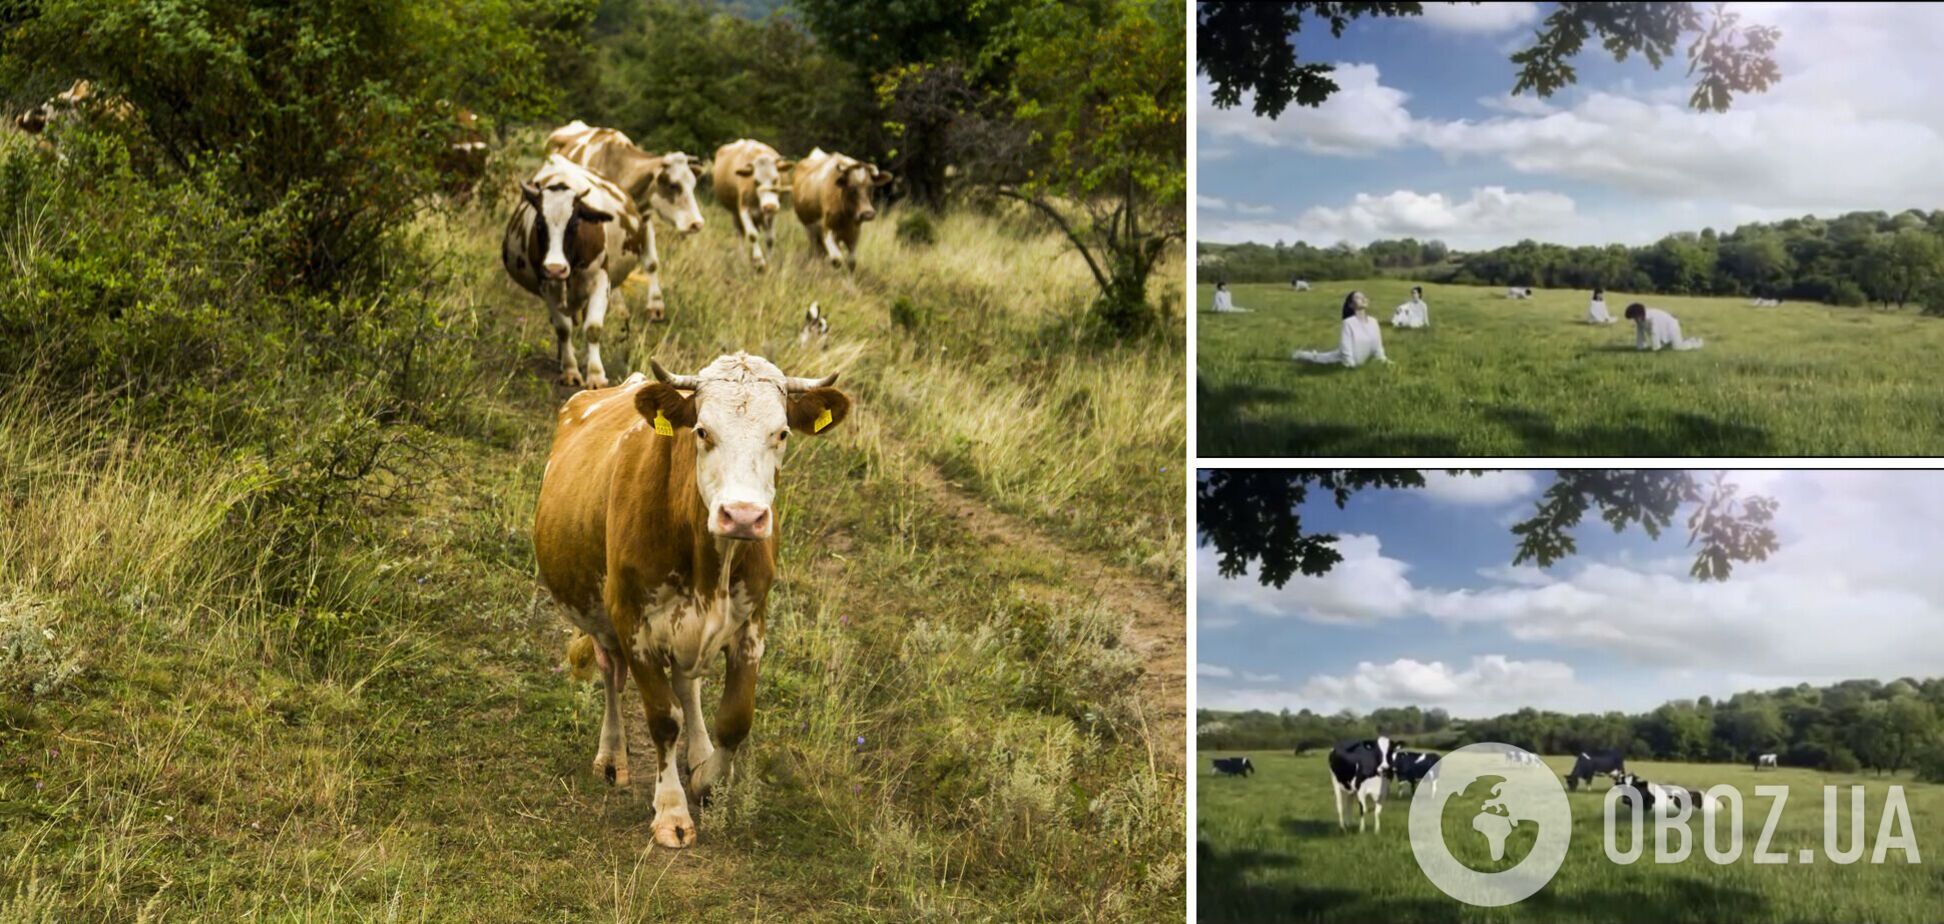 Производитель молока изобразил женщин мычащими коровами, которых нужно доить. Детали скандала и видео